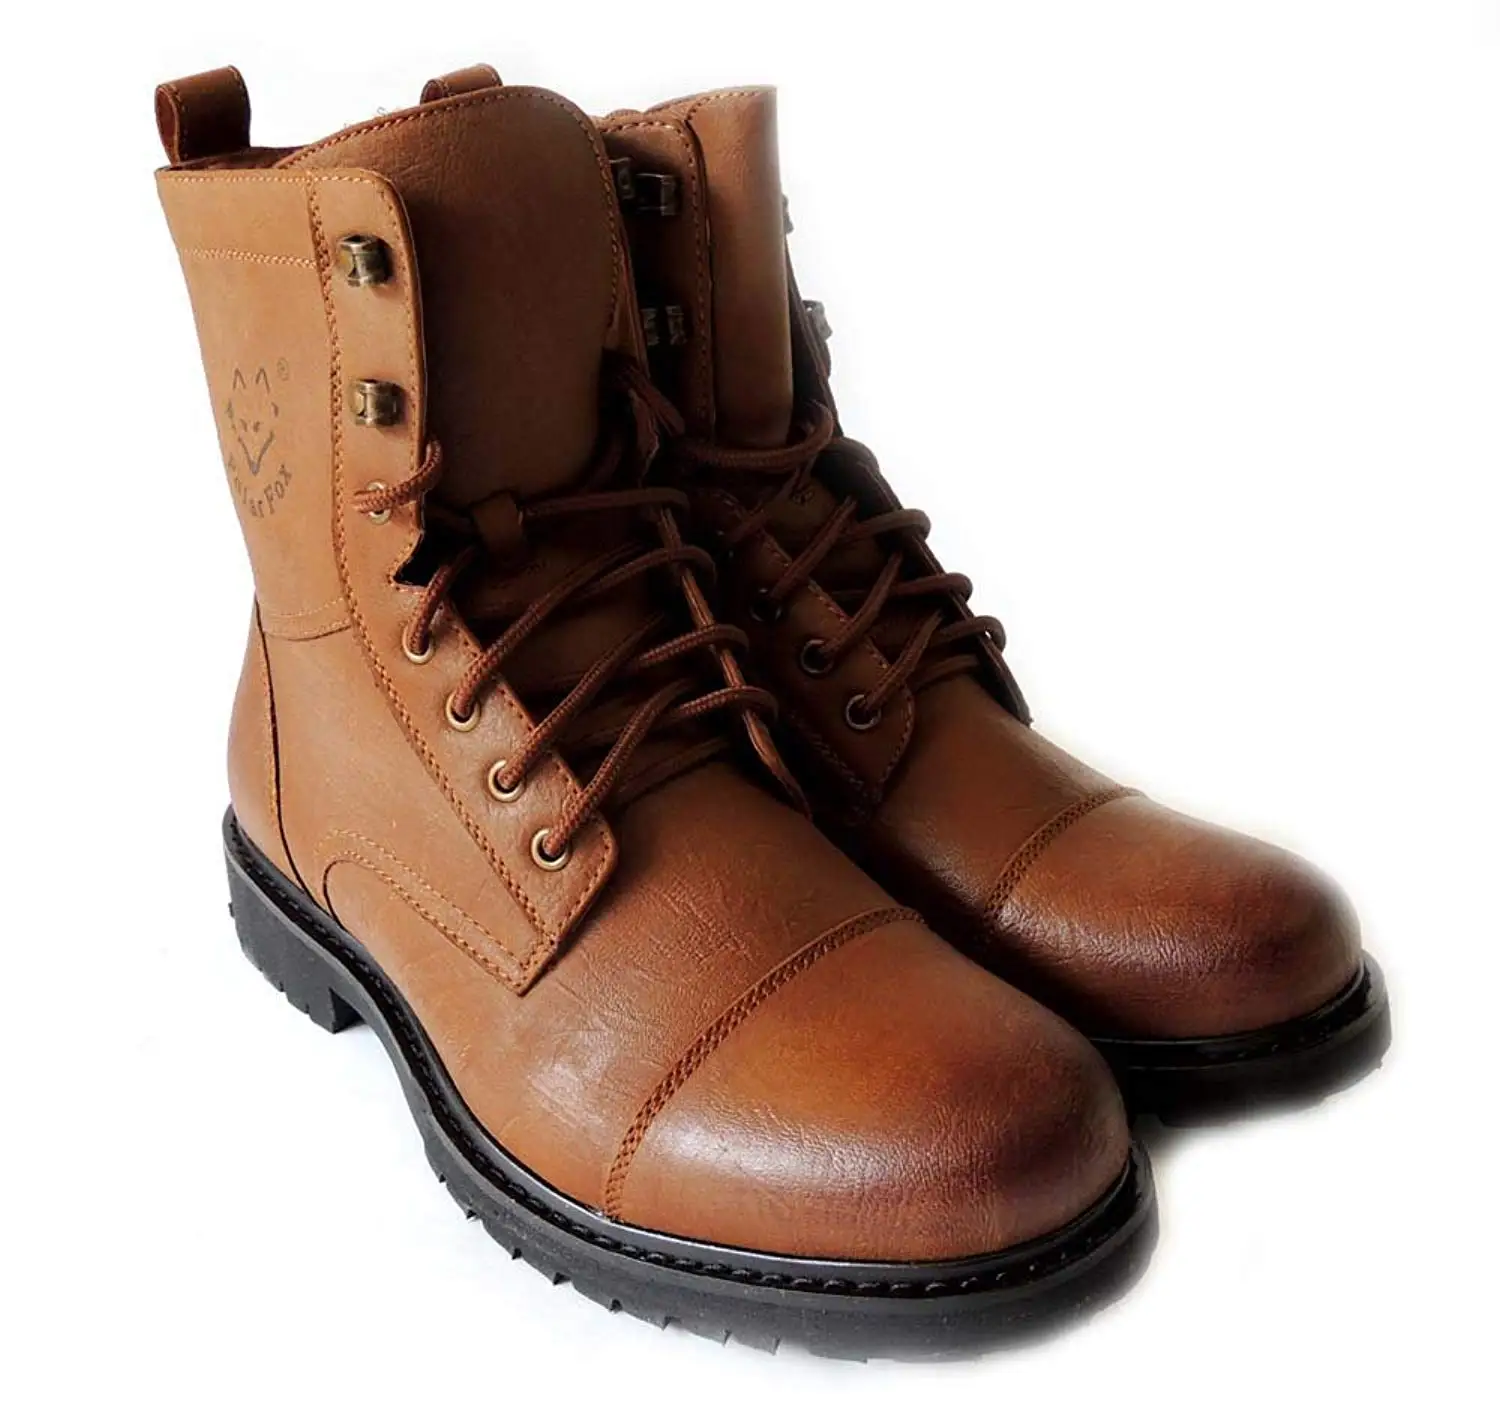 cheap stylish boots